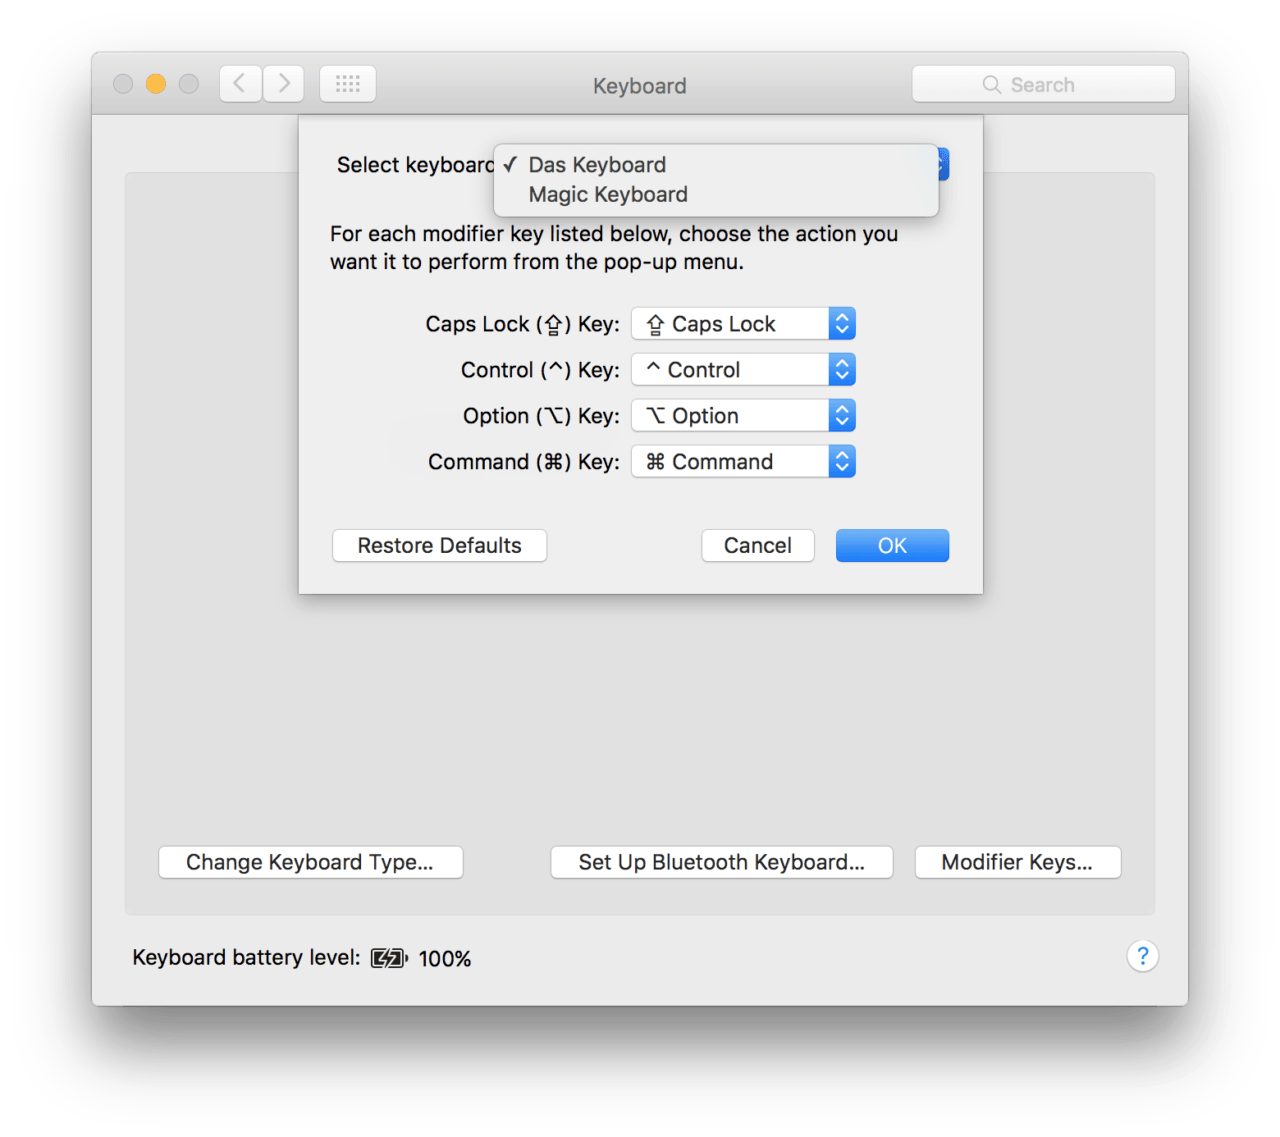 Mac modifier keys app keyboard